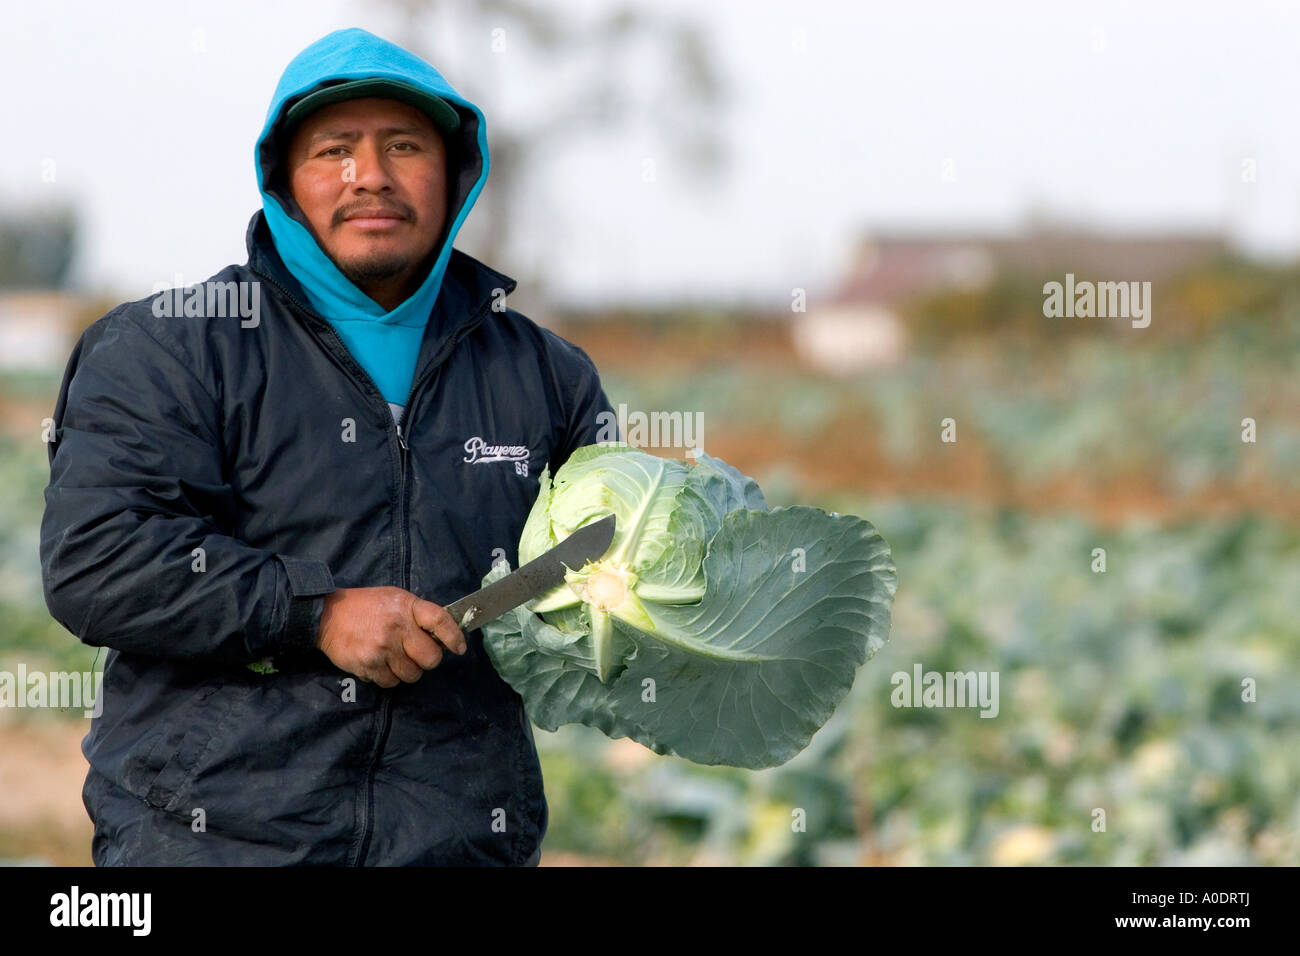 a-mexican-farm-worker-harvesting-cabbage-on-a-farm-in-fruitland-idaho-A0DRTJ.jpg